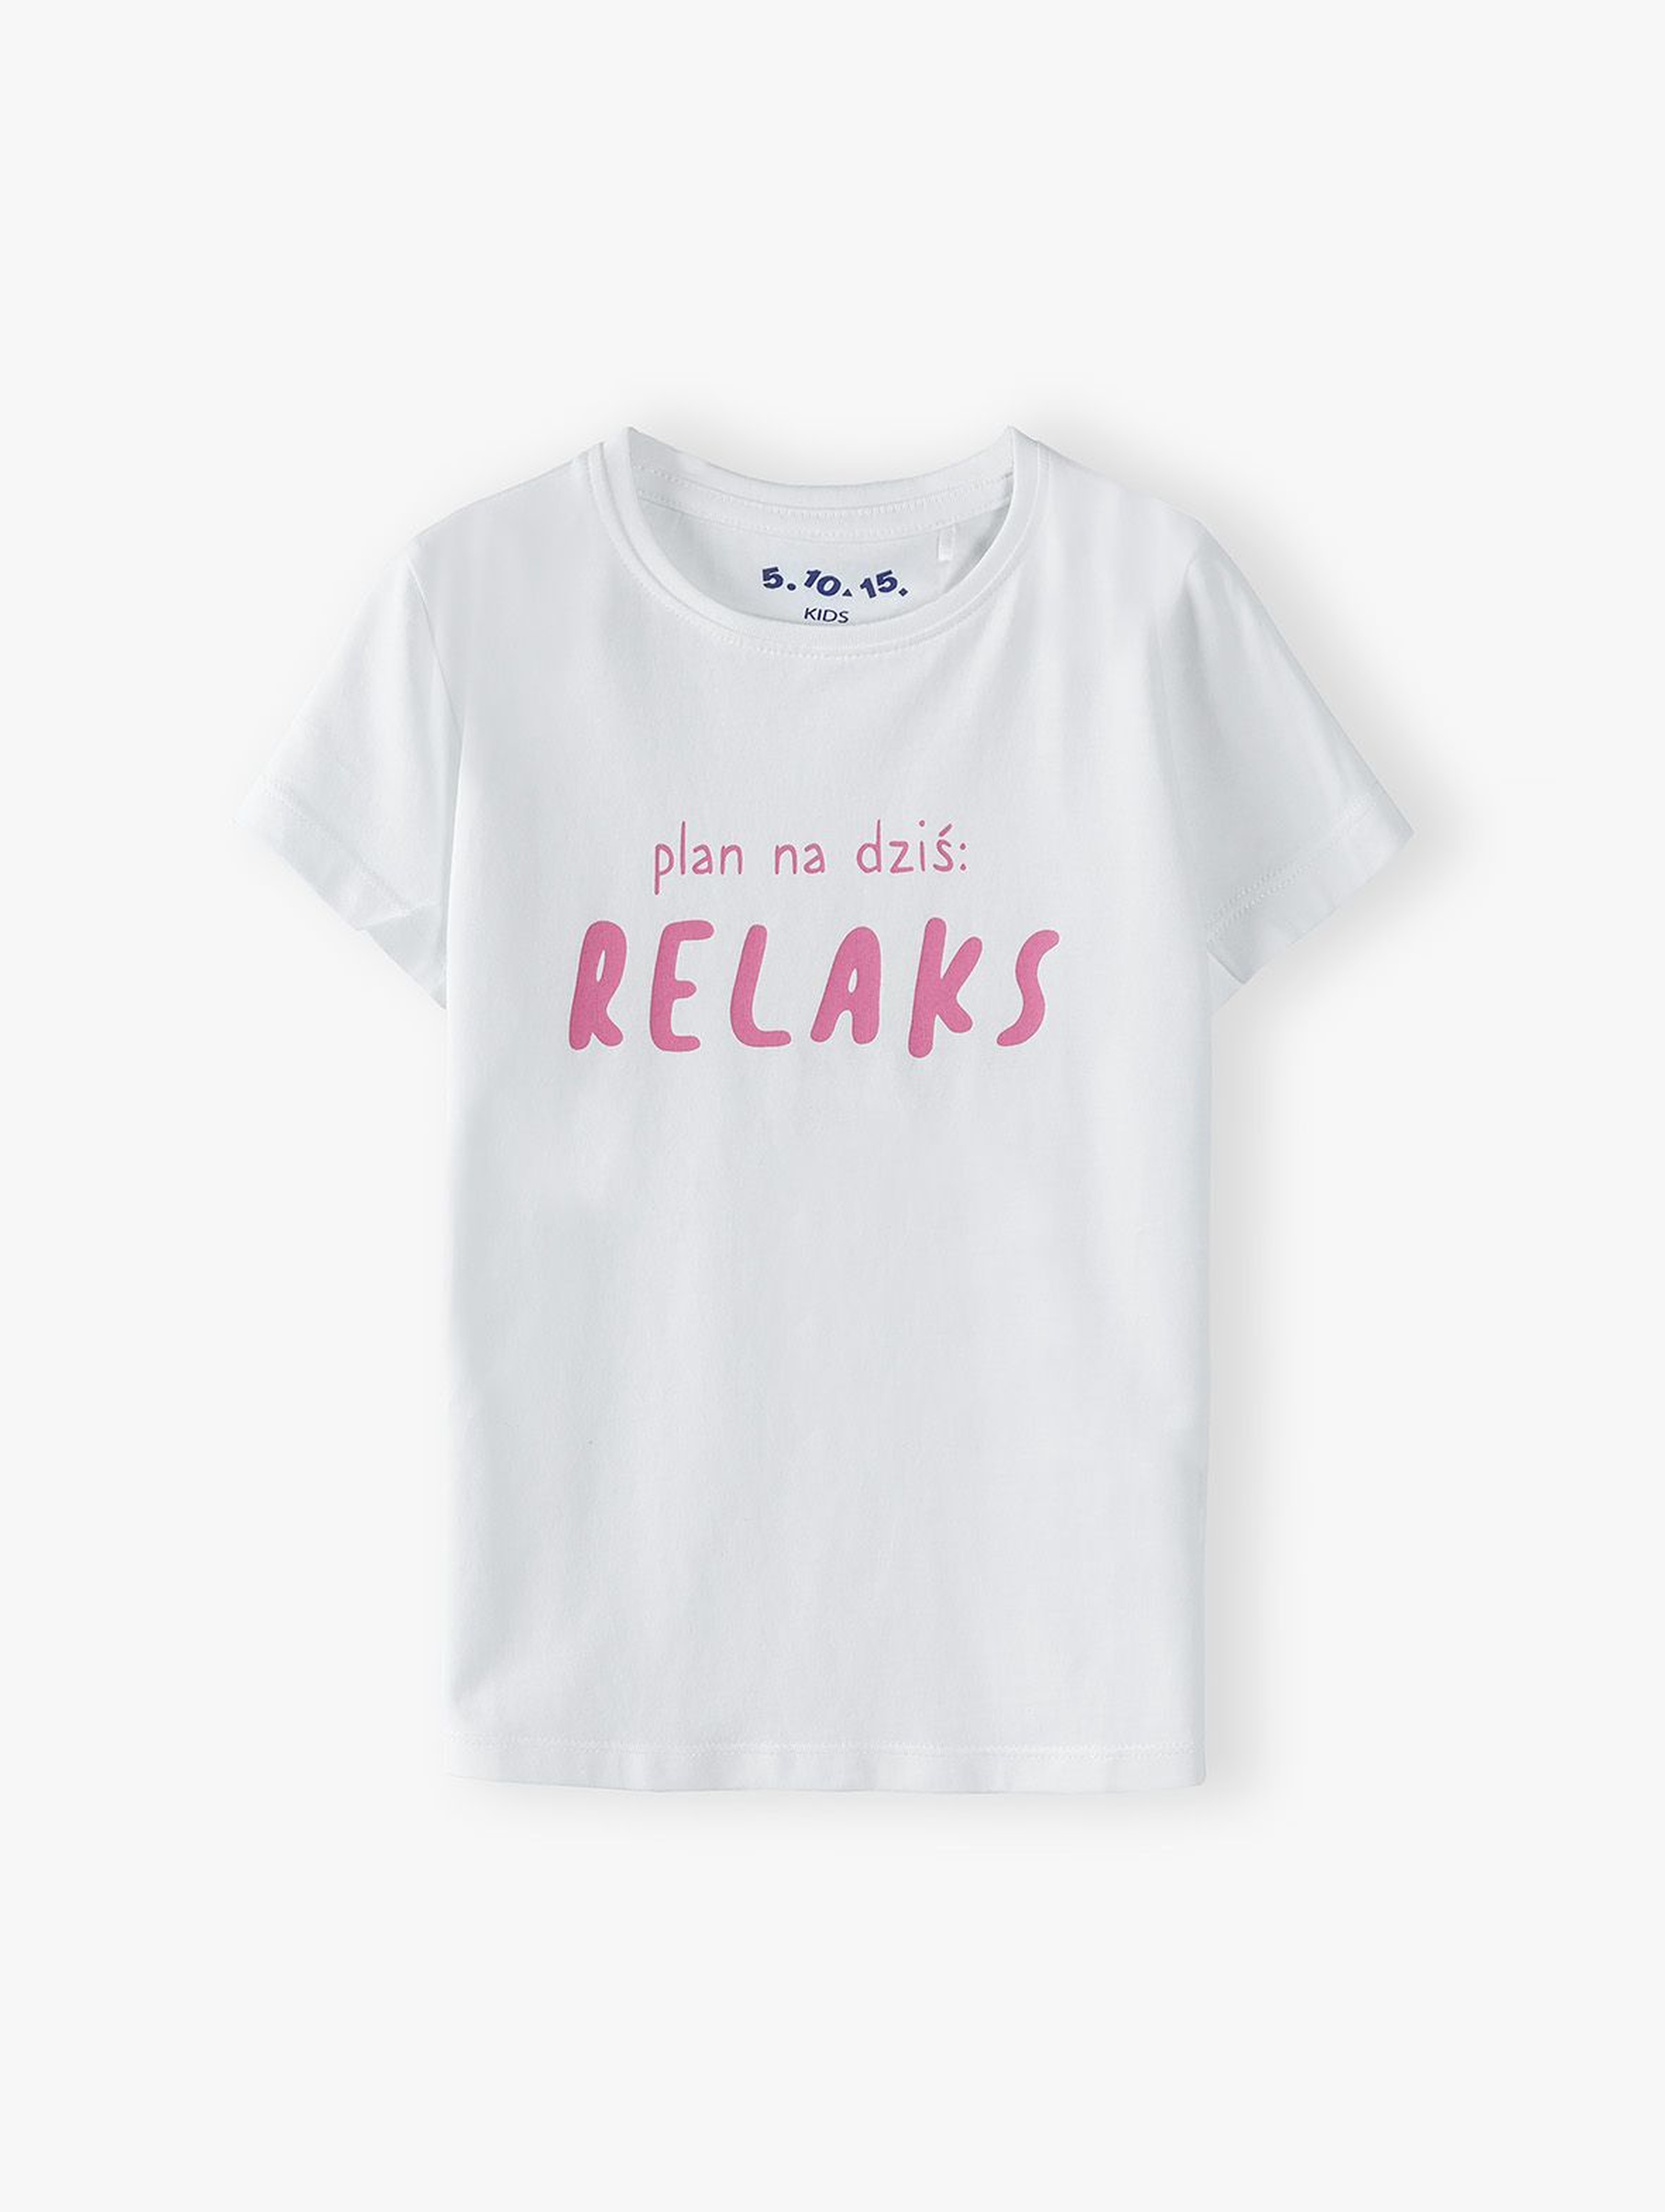 Bawełniany t-shirt dziewczęcy z napisem: Plan na dziś - Relaks